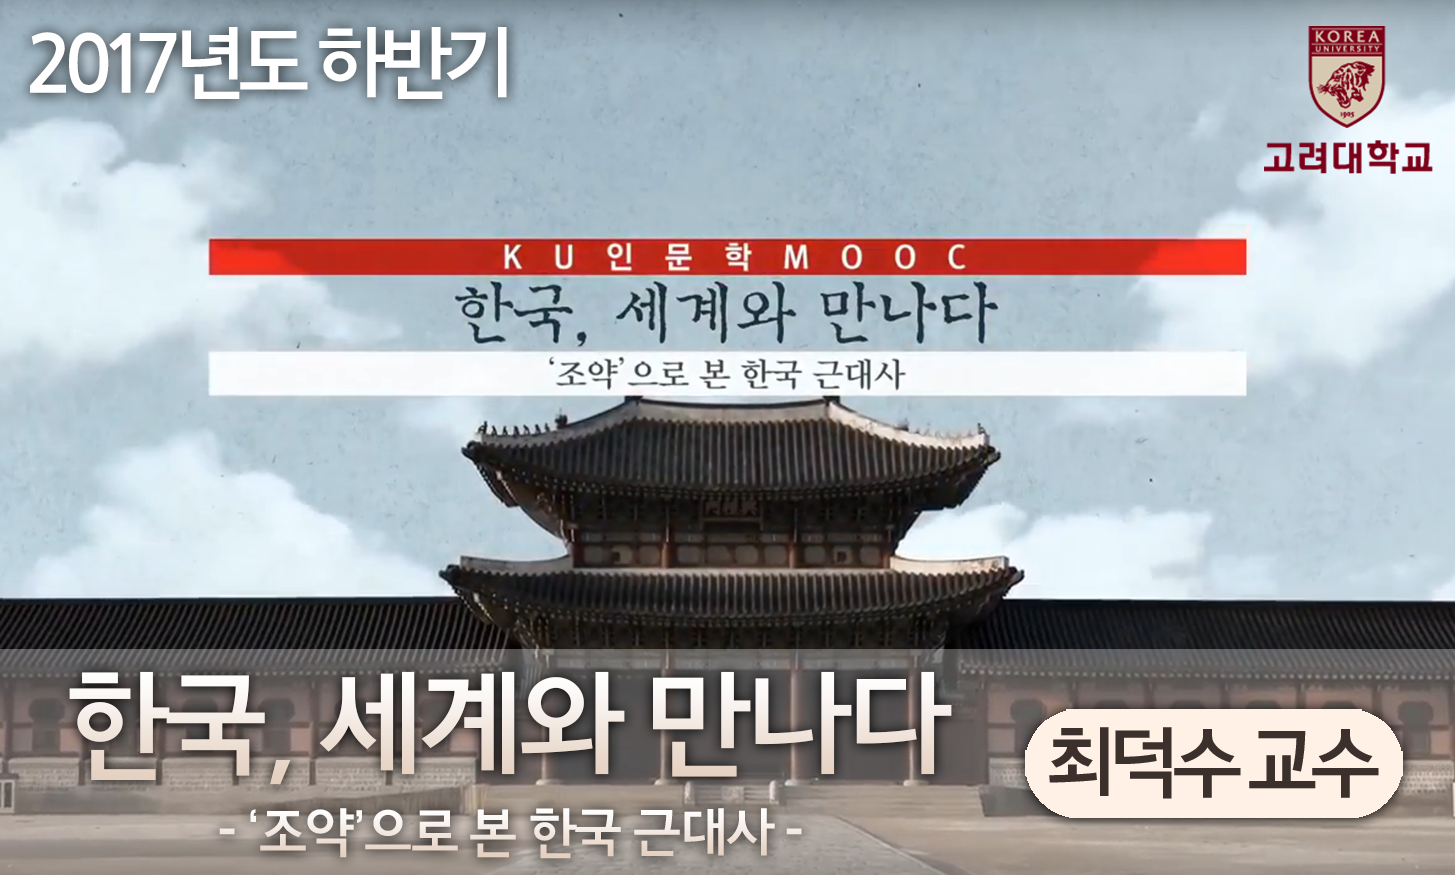 한국, 세계와 만나다: '조약'으로 보는 한국근대사  개강일 2017-10-16 종강일 2017-12-17 강좌상태 종료